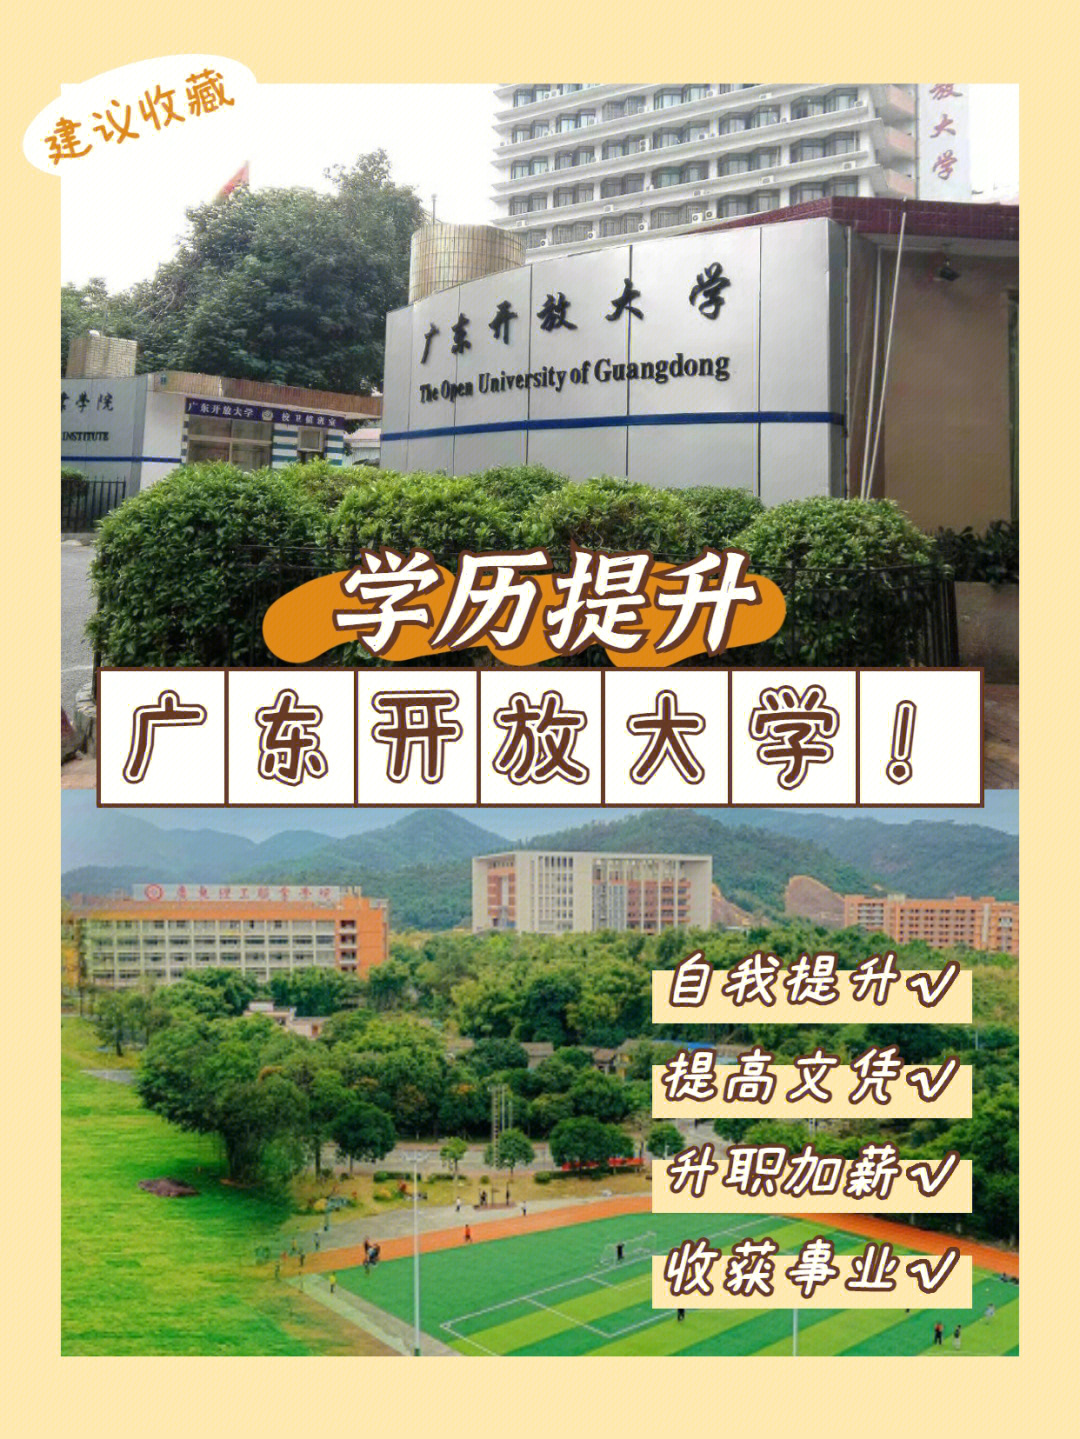 广东开放大学简介76广东开放大学(原广东电大)是广东省人民政府举办